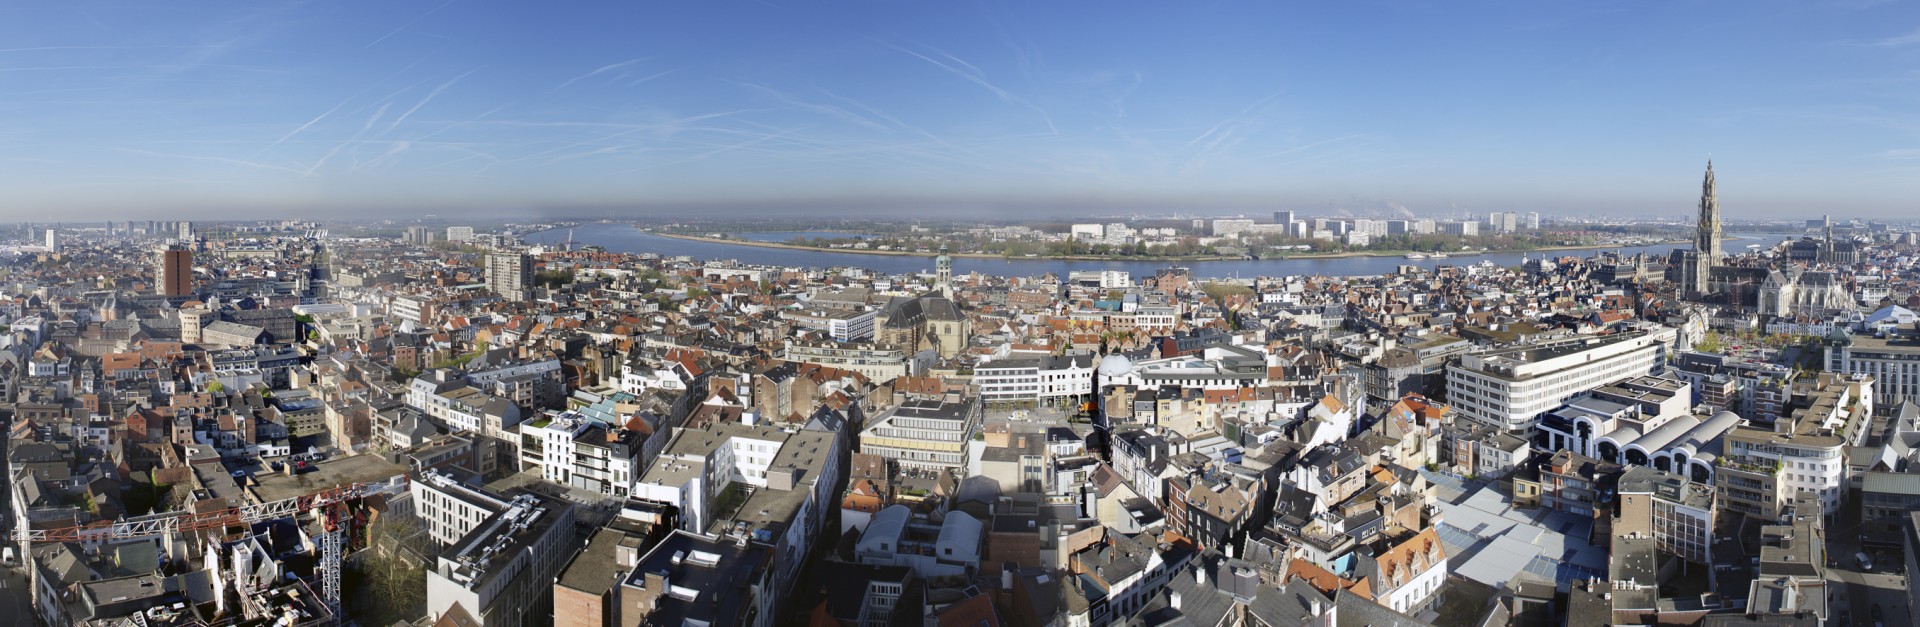 Overzichtsbeeld stad Antwerpen © AG VESPA - Bart Gosselin